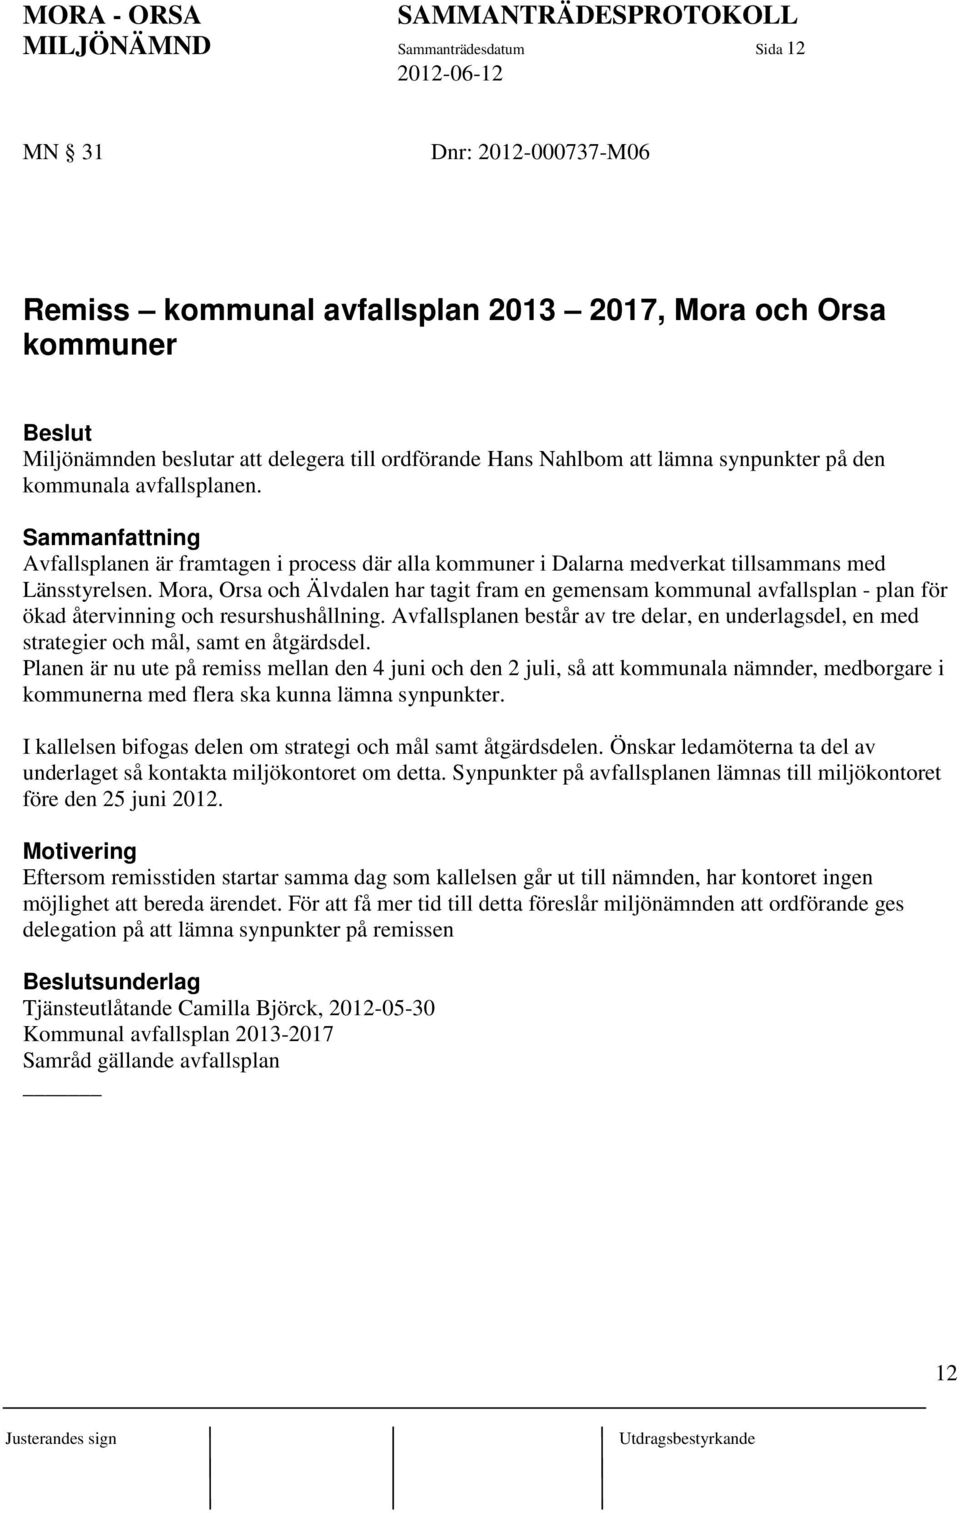 Mora, Orsa och Älvdalen har tagit fram en gemensam kommunal avfallsplan - plan för ökad återvinning och resurshushållning.